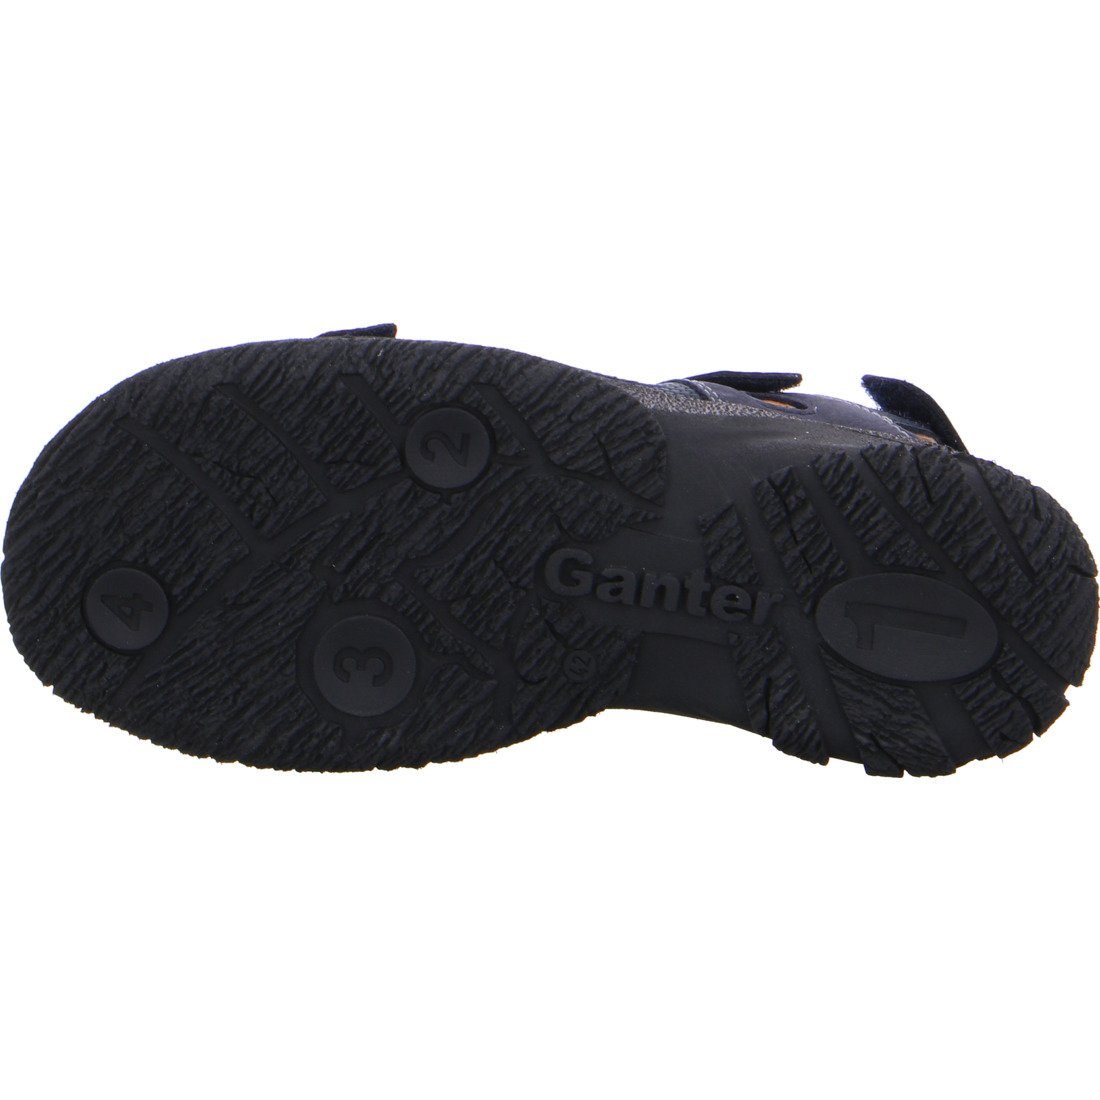 Ganter Sandale Herren Nubuk Schuhe, - Giovanni 048929 Ganter grau Sandale